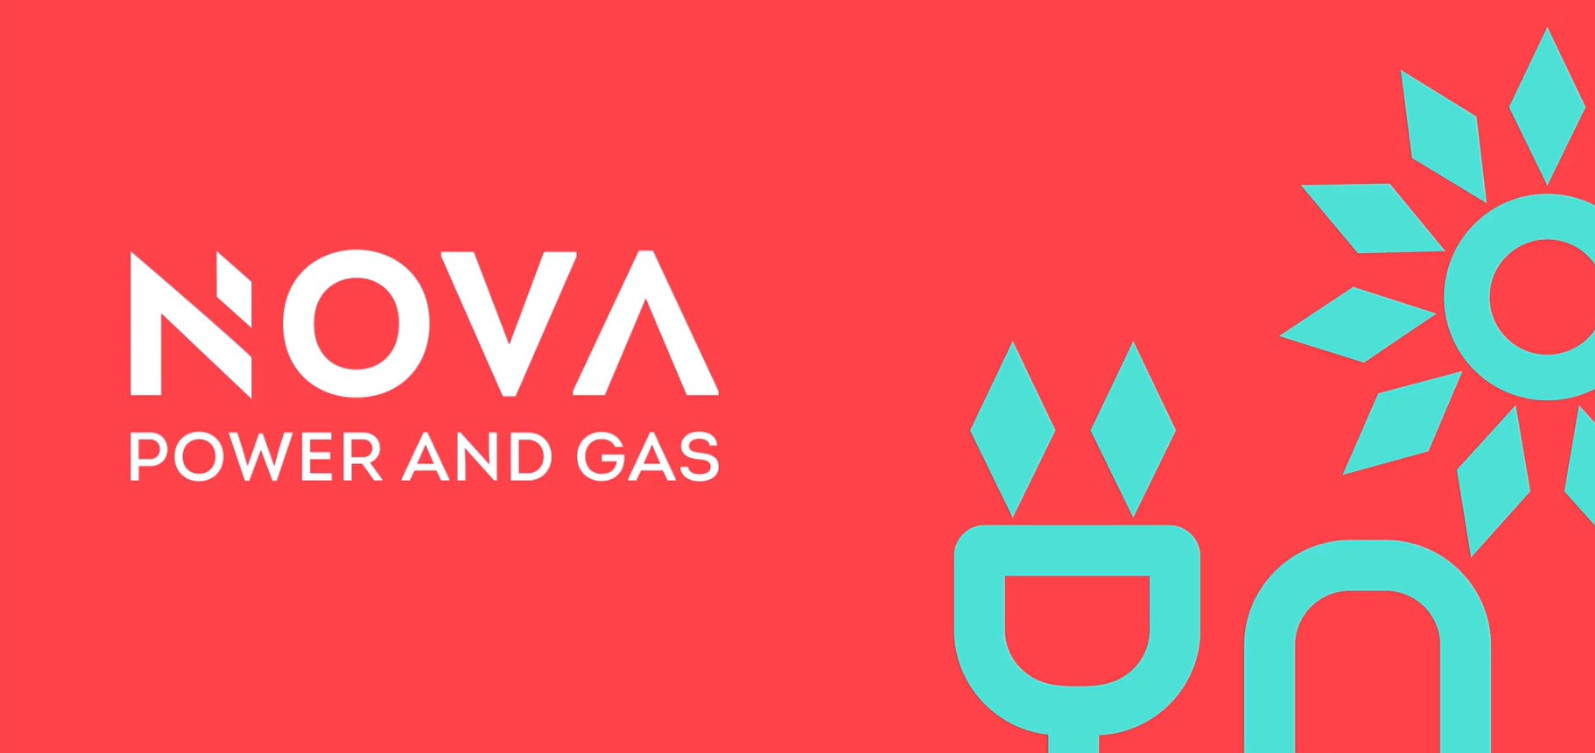 Nova Power and Gas